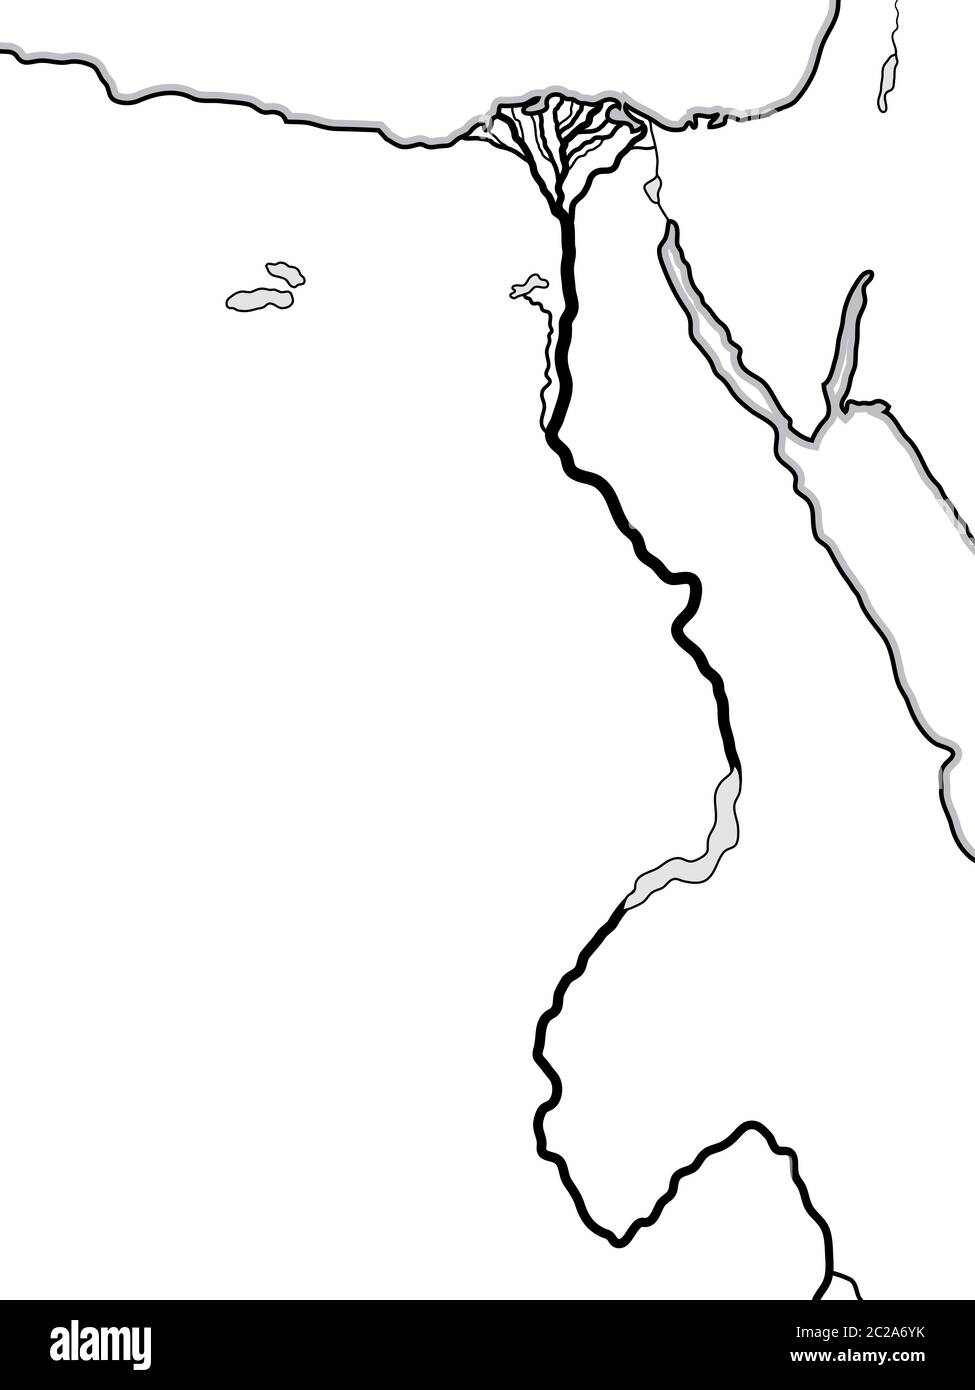 Mappa mondiale DI EGITTO e LIBIA: Nord Africa, basso Egitto e Alto Egitto, il fiume Nilo e il suo Delta. Grafico geografico. Foto Stock